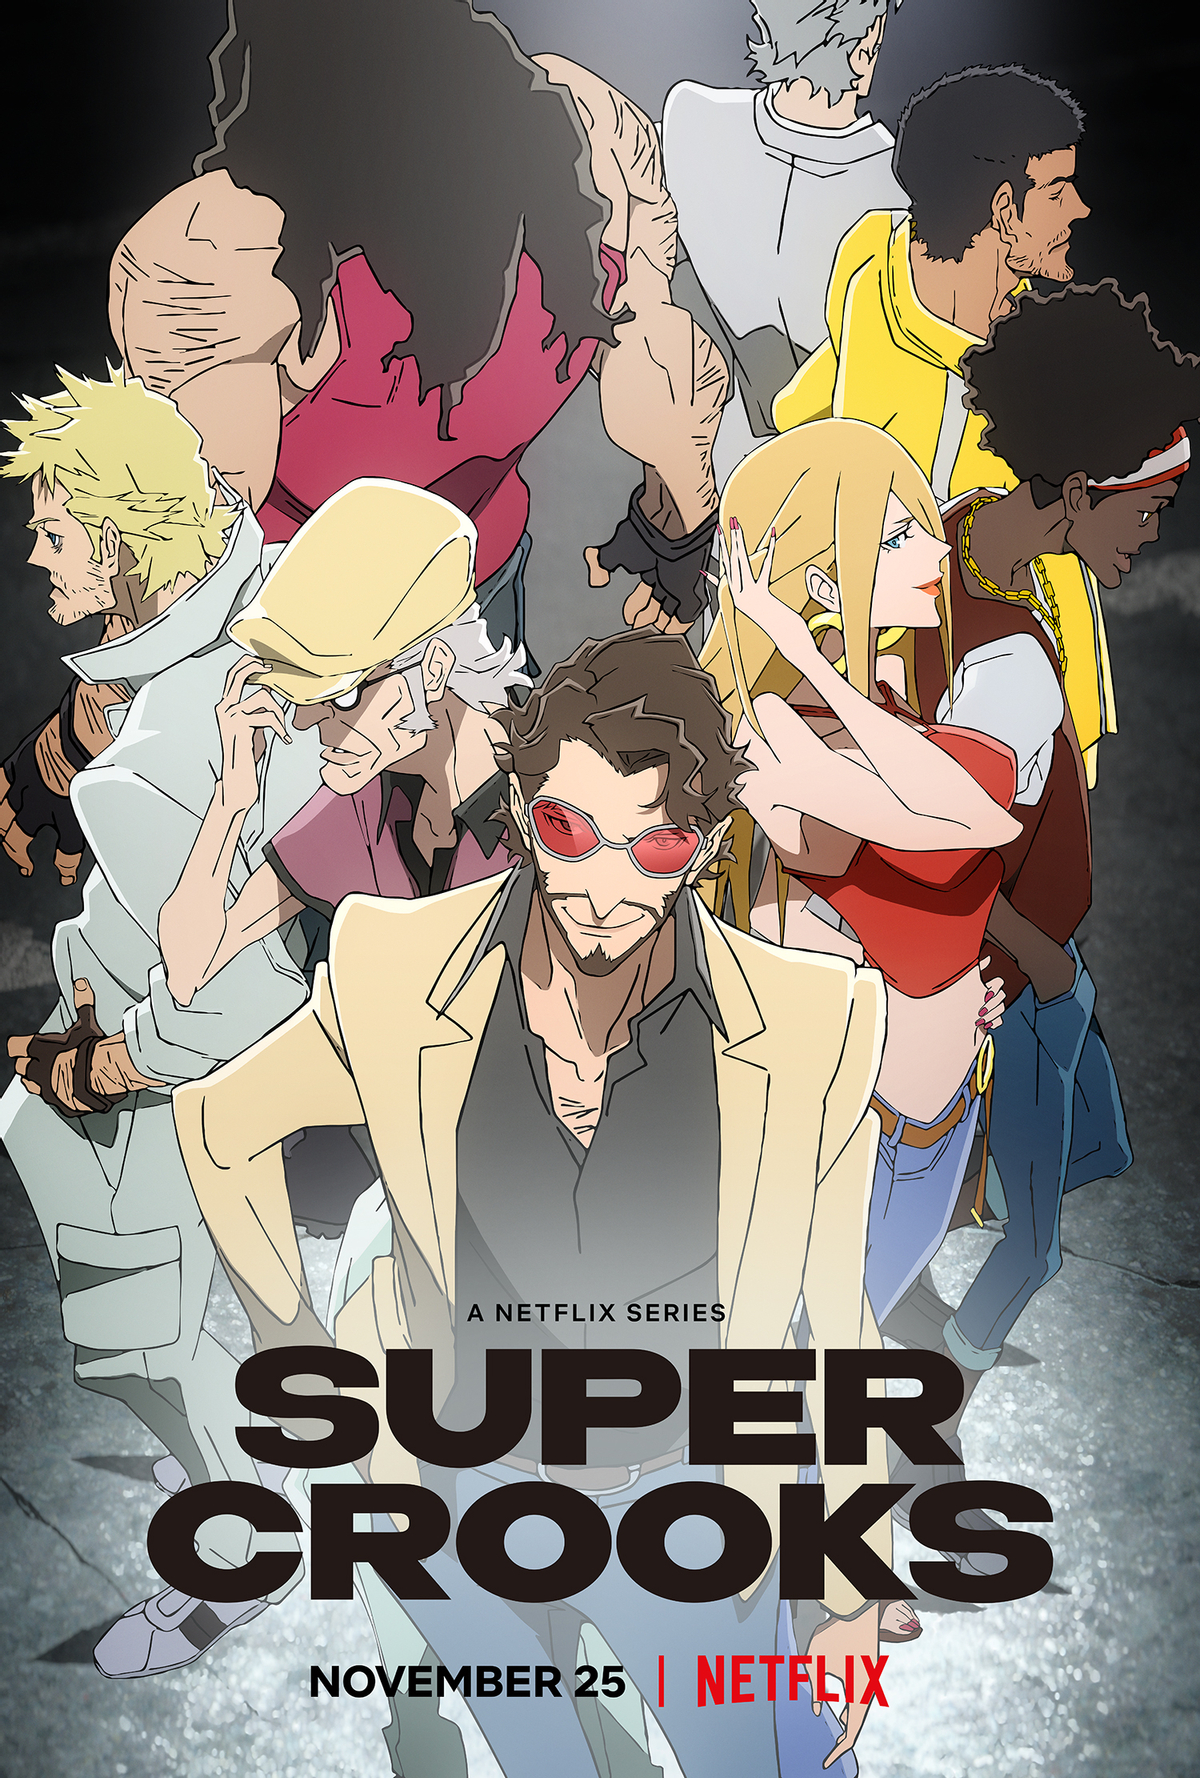 [Netflix Tudum] Дебютный трейлер аниме «Суперворы» от Bones. Премьера 25 ноября